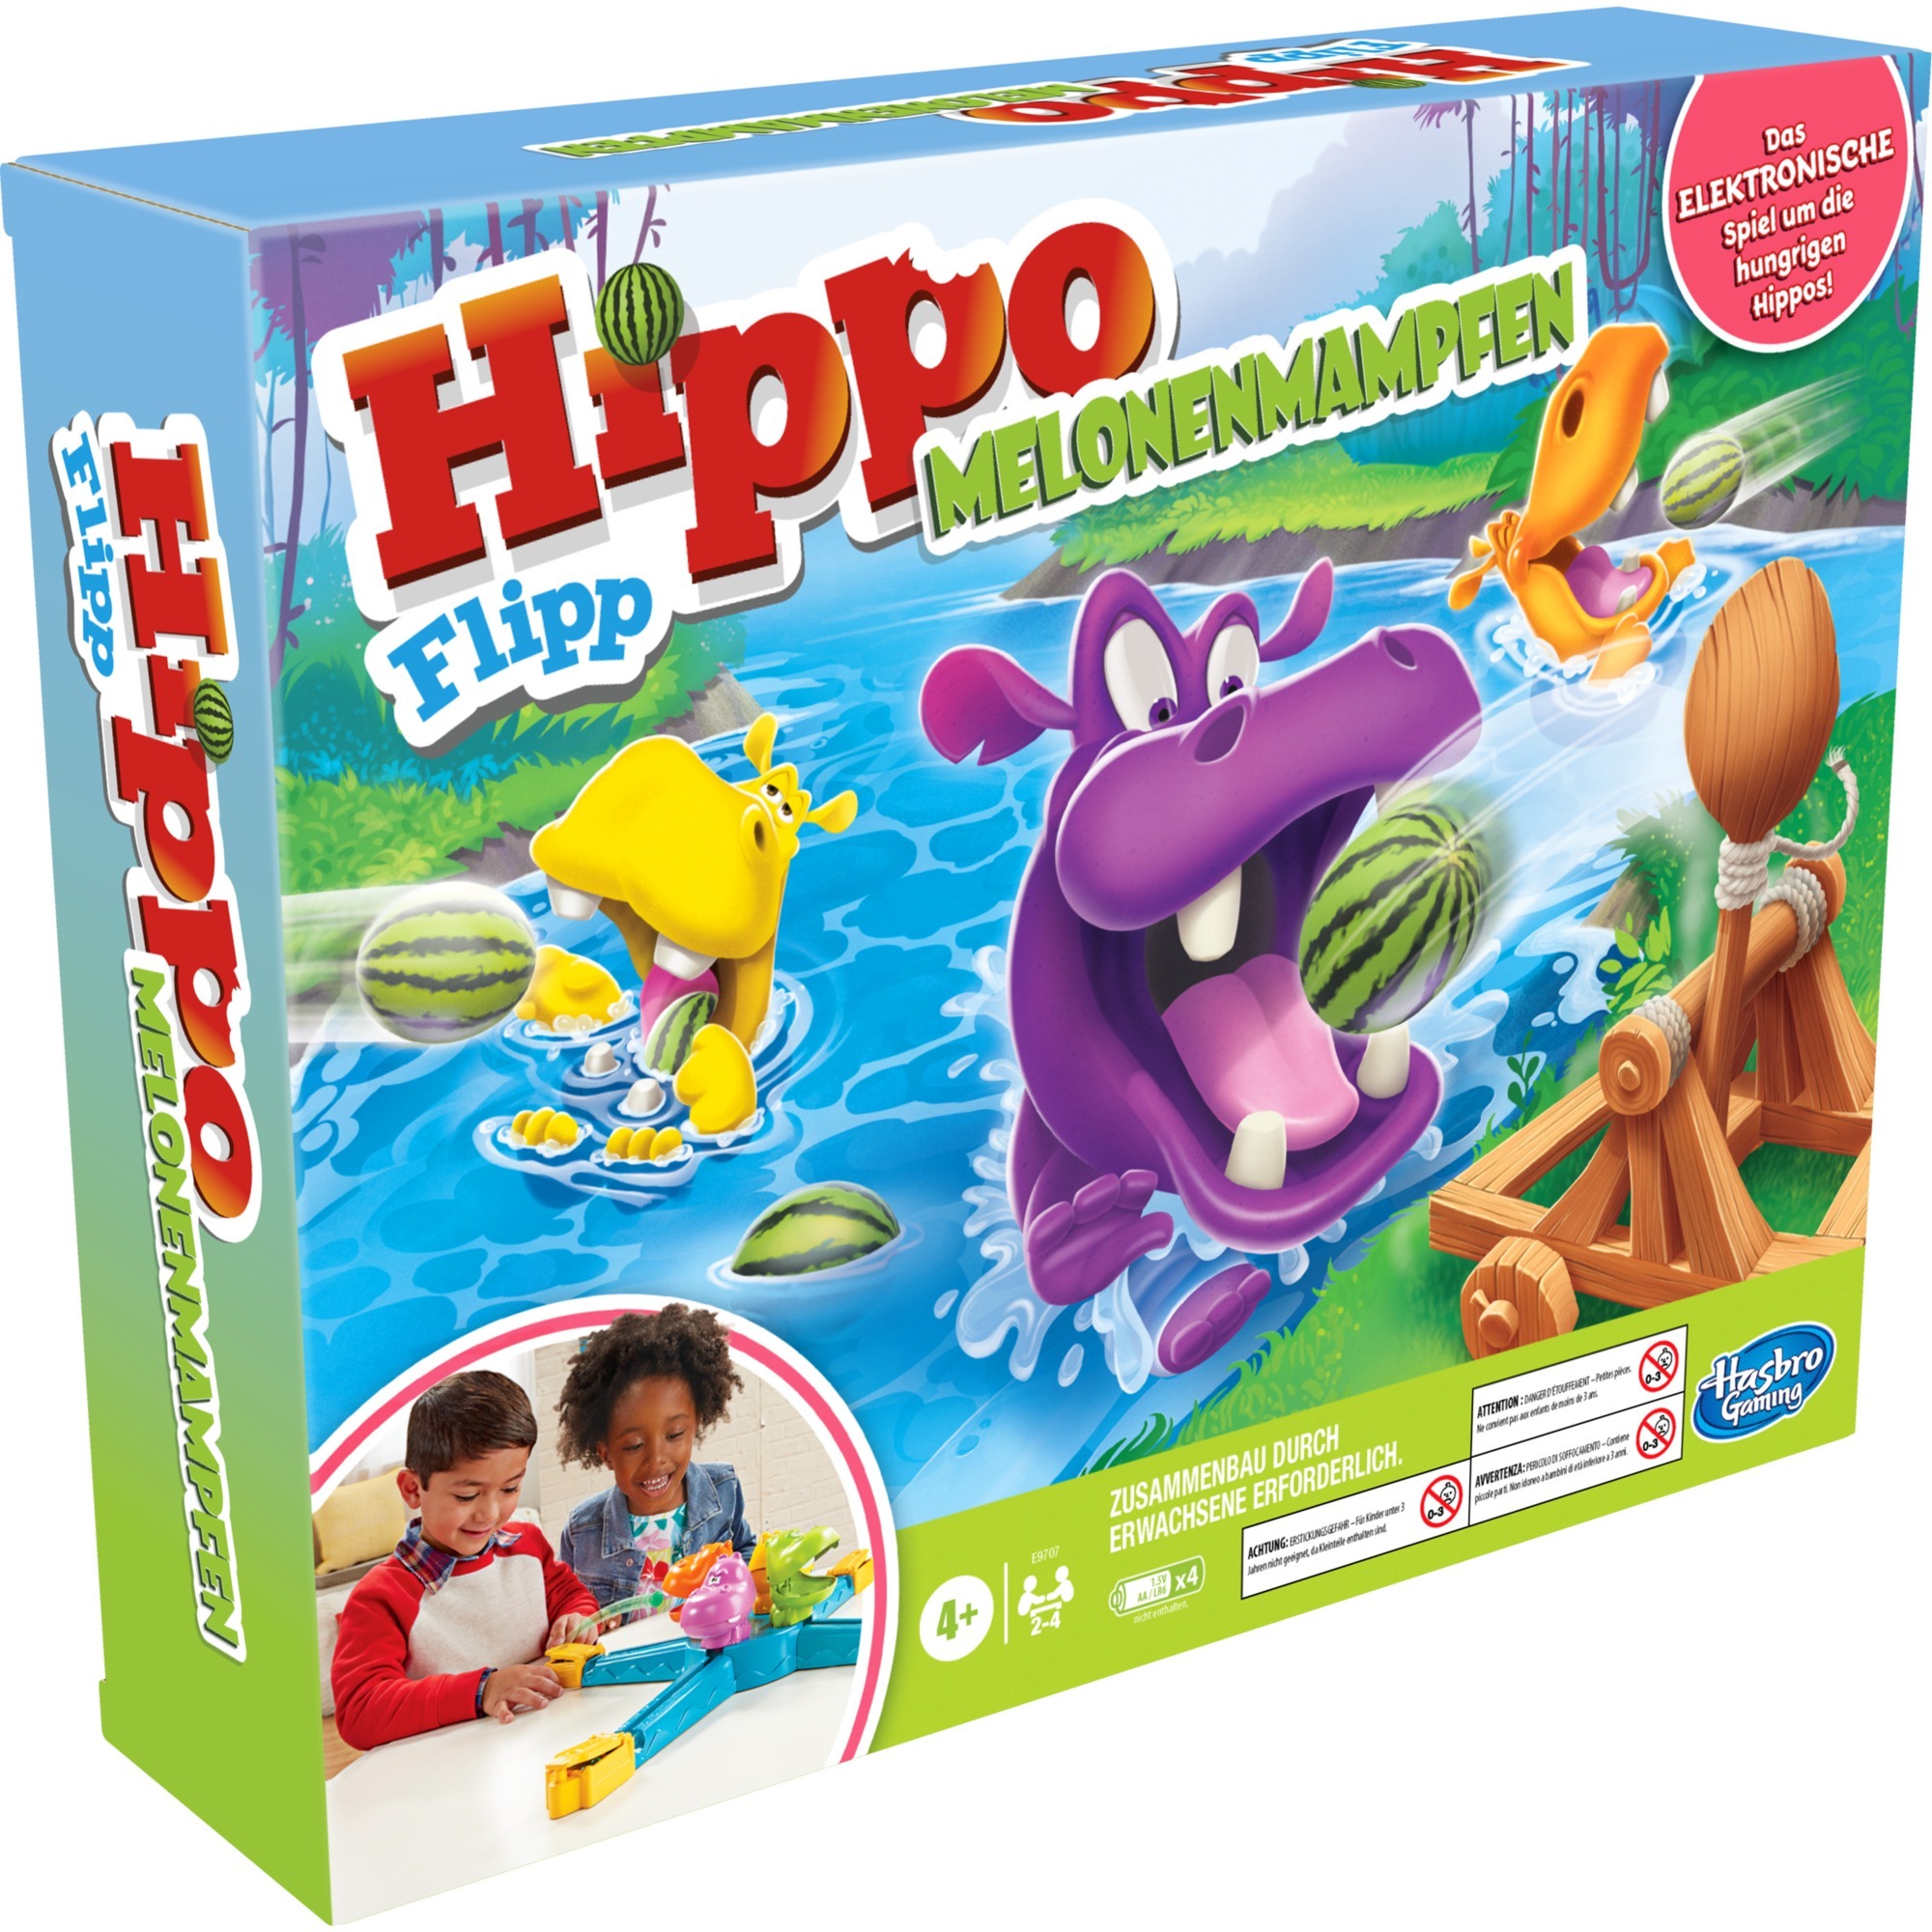 Image of Alternate - Hippo Flipp Melonenmampfen, Geschicklichkeitsspiel online einkaufen bei Alternate